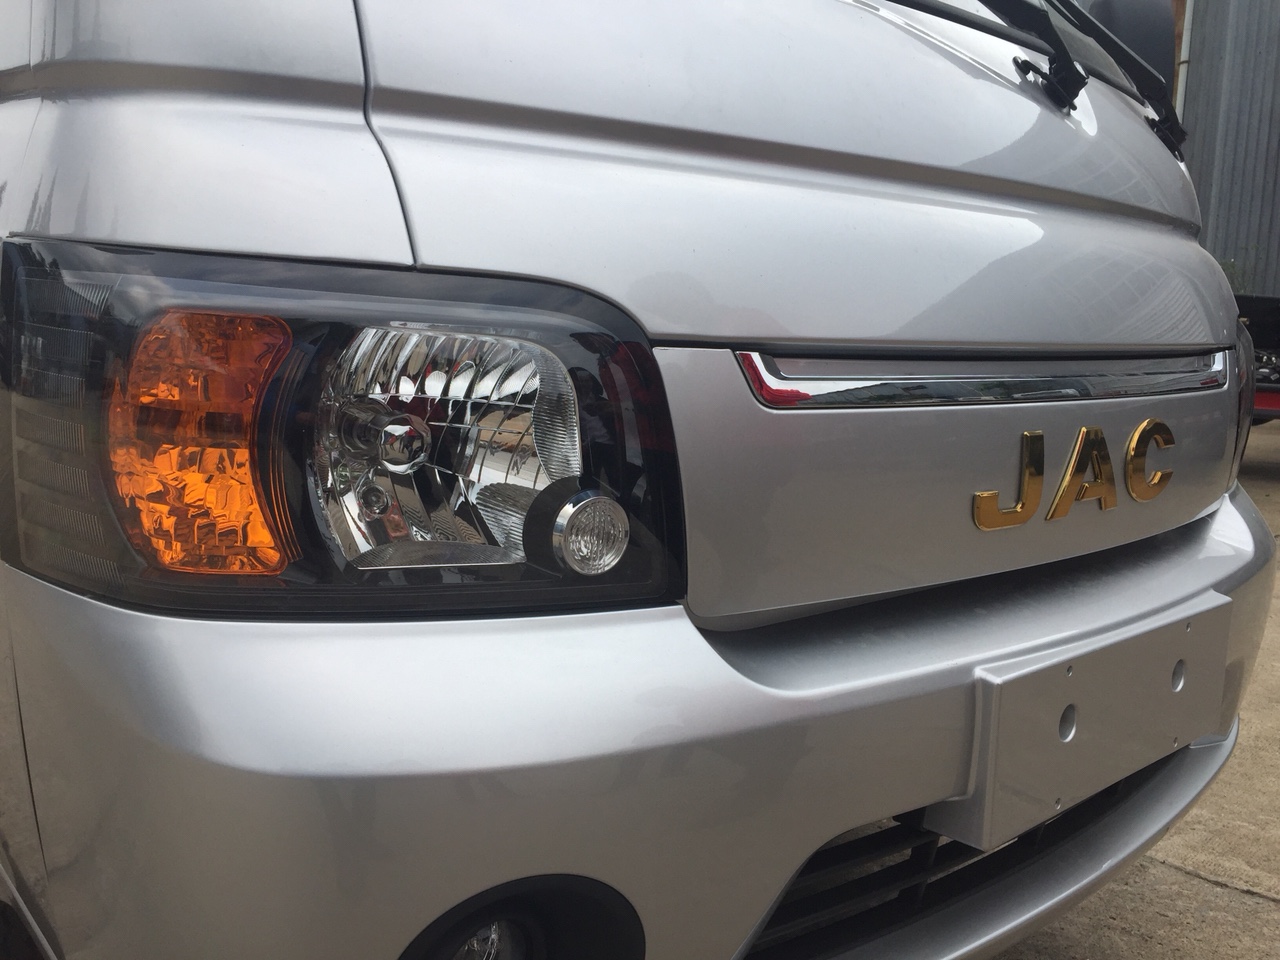 Xe tải Jac X99 990 Kg, động cơ xăng, tiêu chuẩn khí thải euro 4